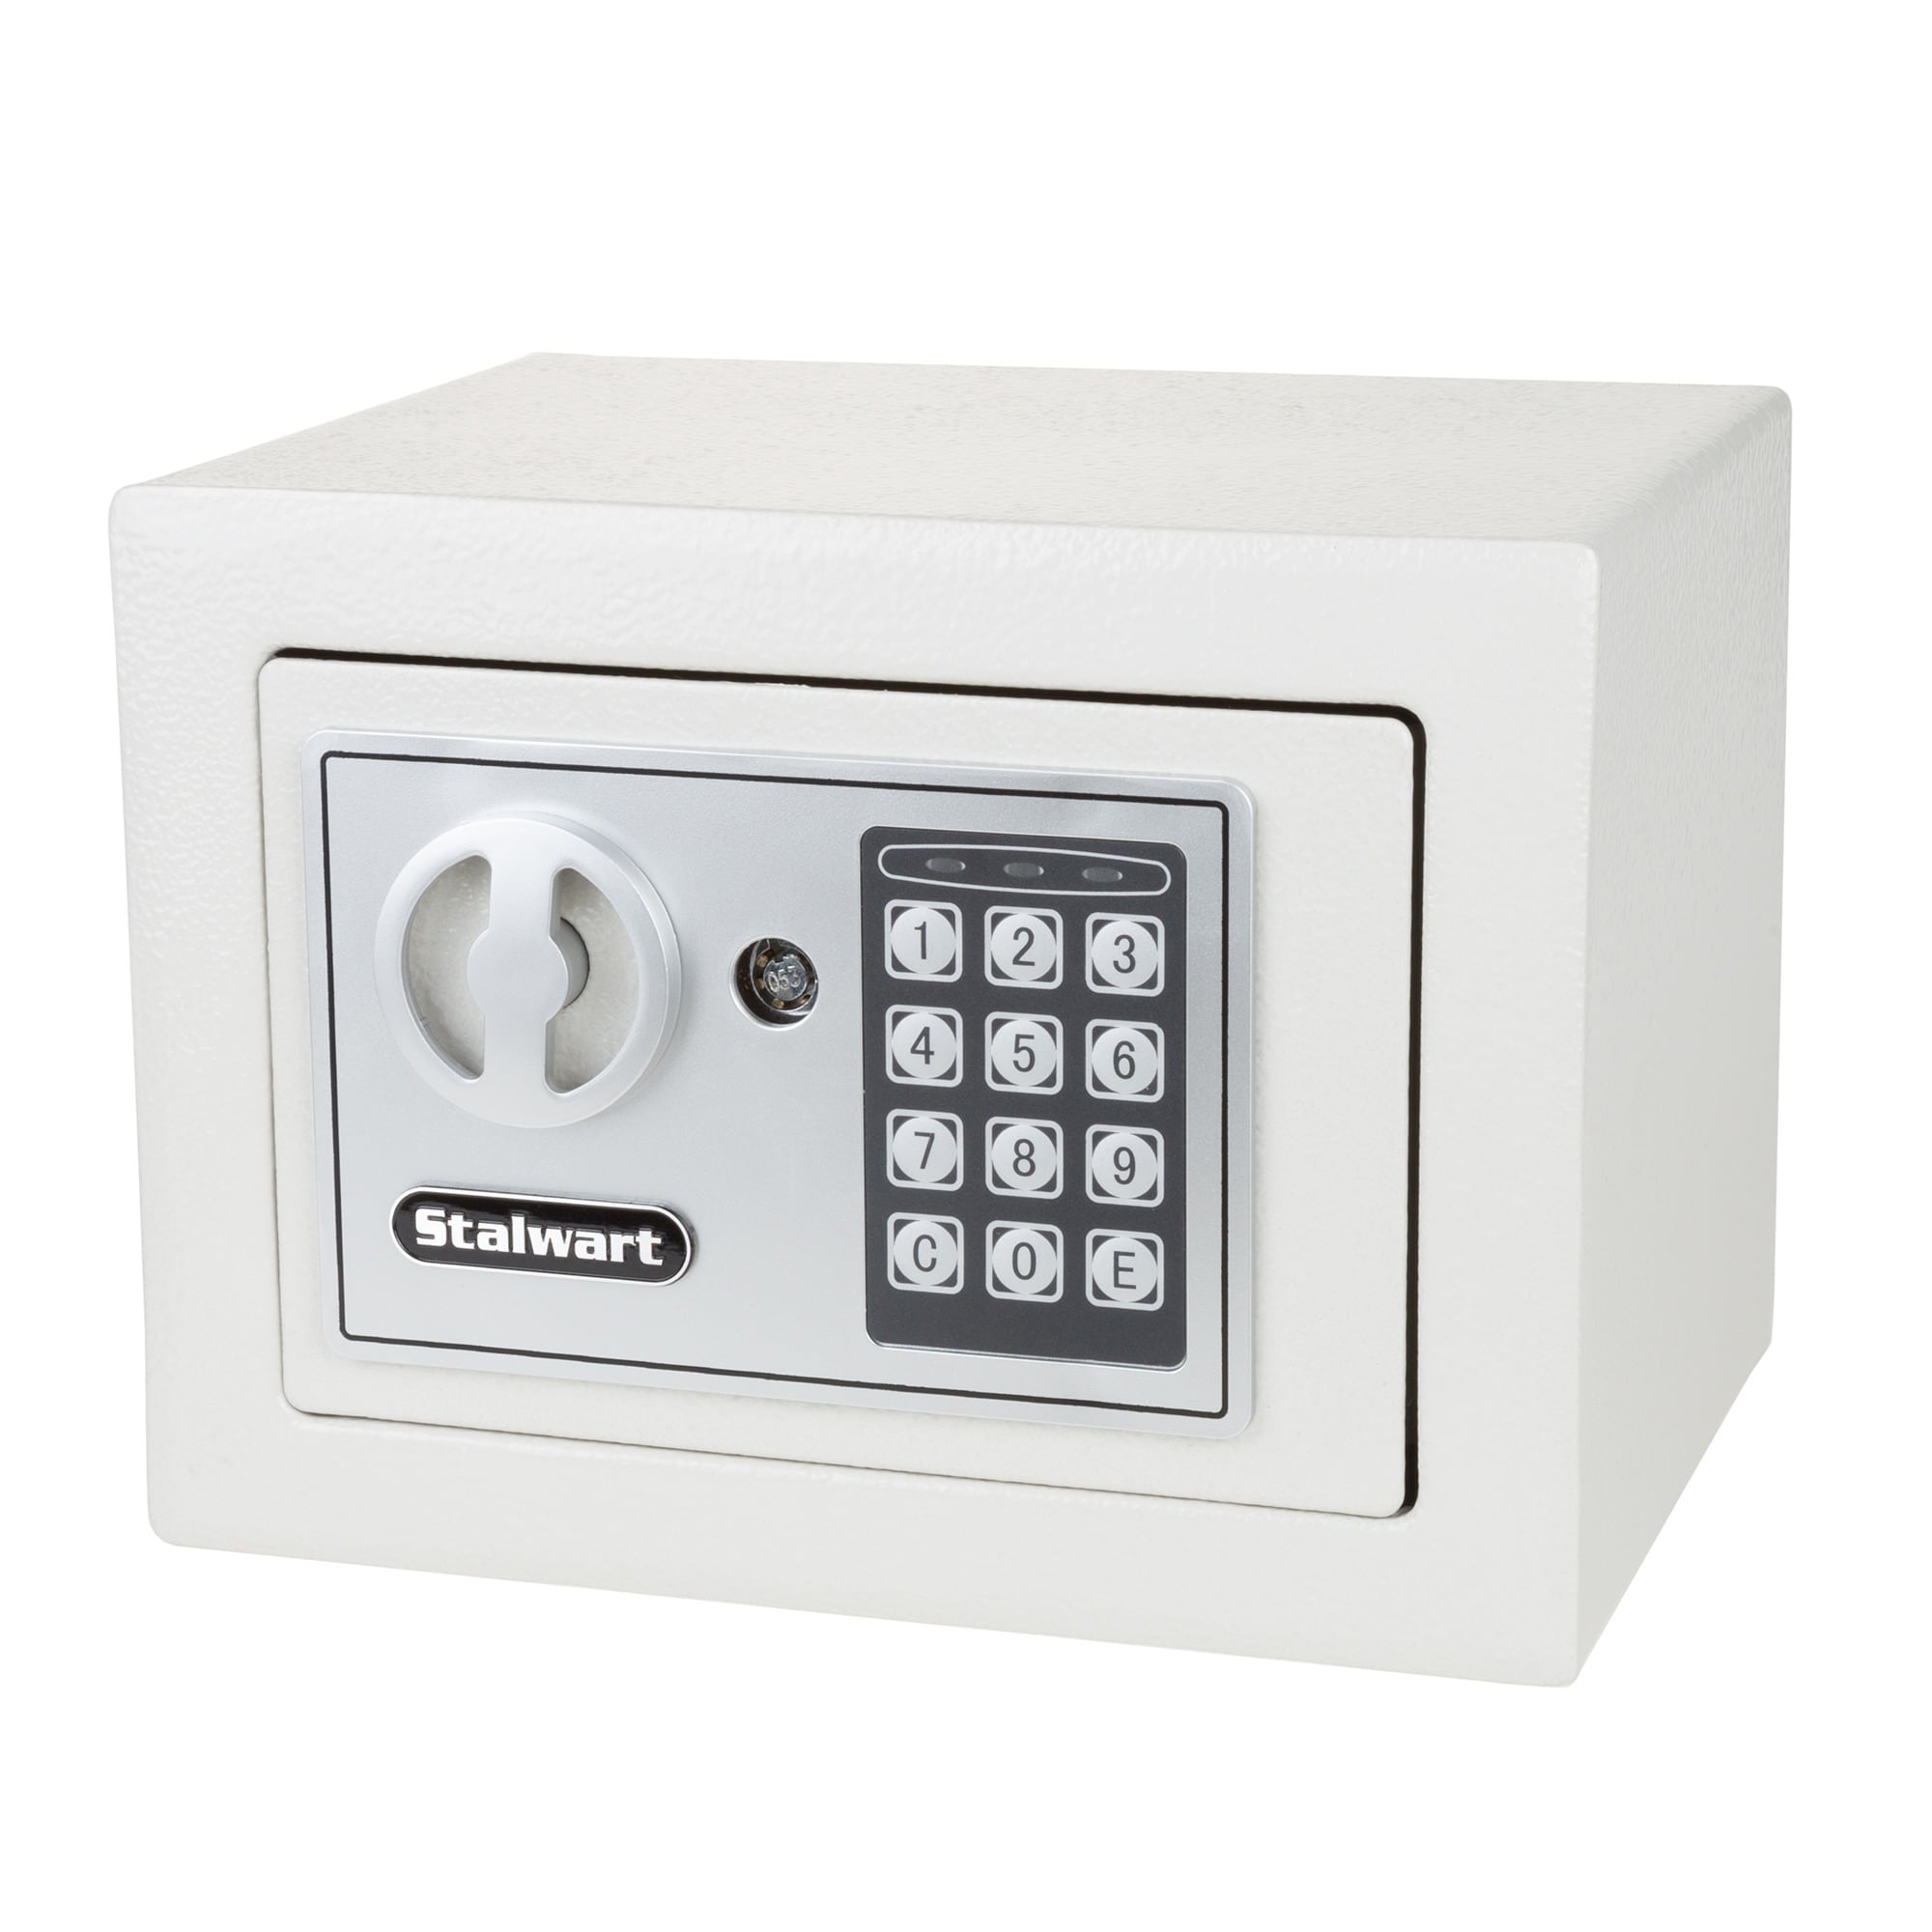 Deluxe Safe Box, Money Box, Digital Keypad Safe Box, Electronic